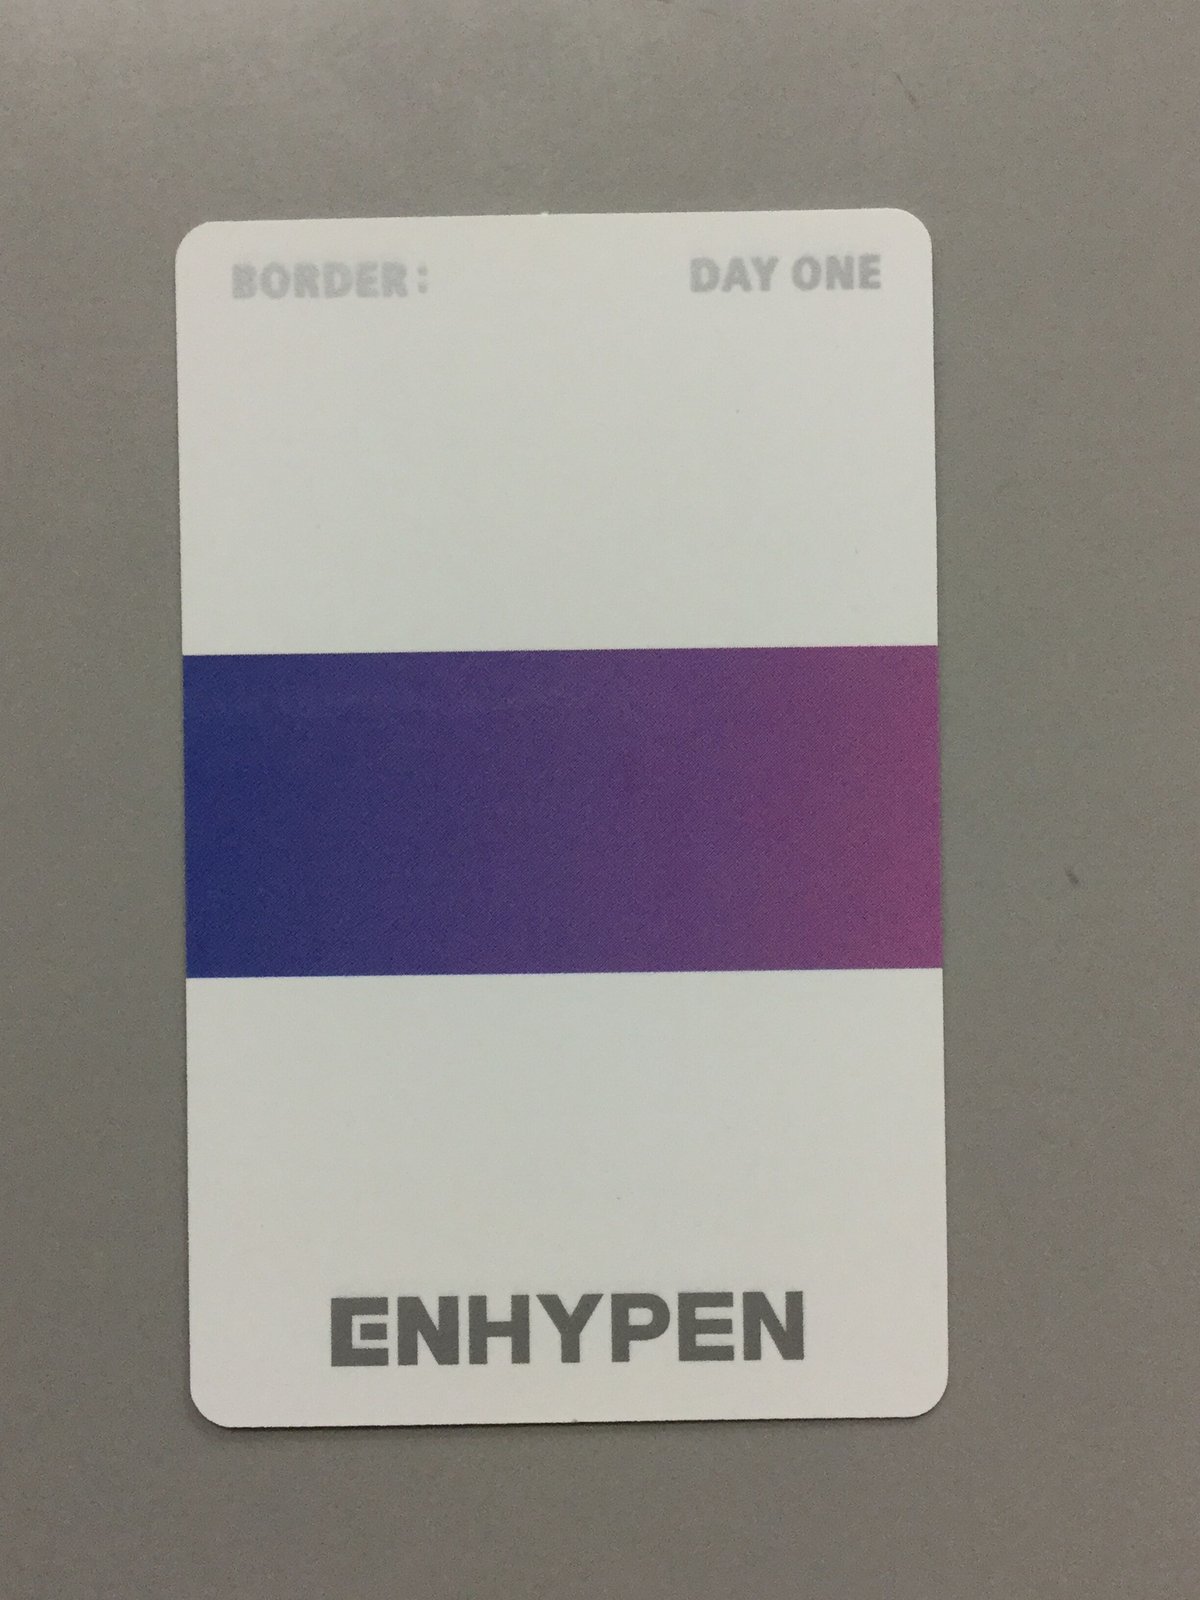 若干イタミ有】ENHYPEN BORDER:DAY ONE トレカ ソヌ | K-BO...